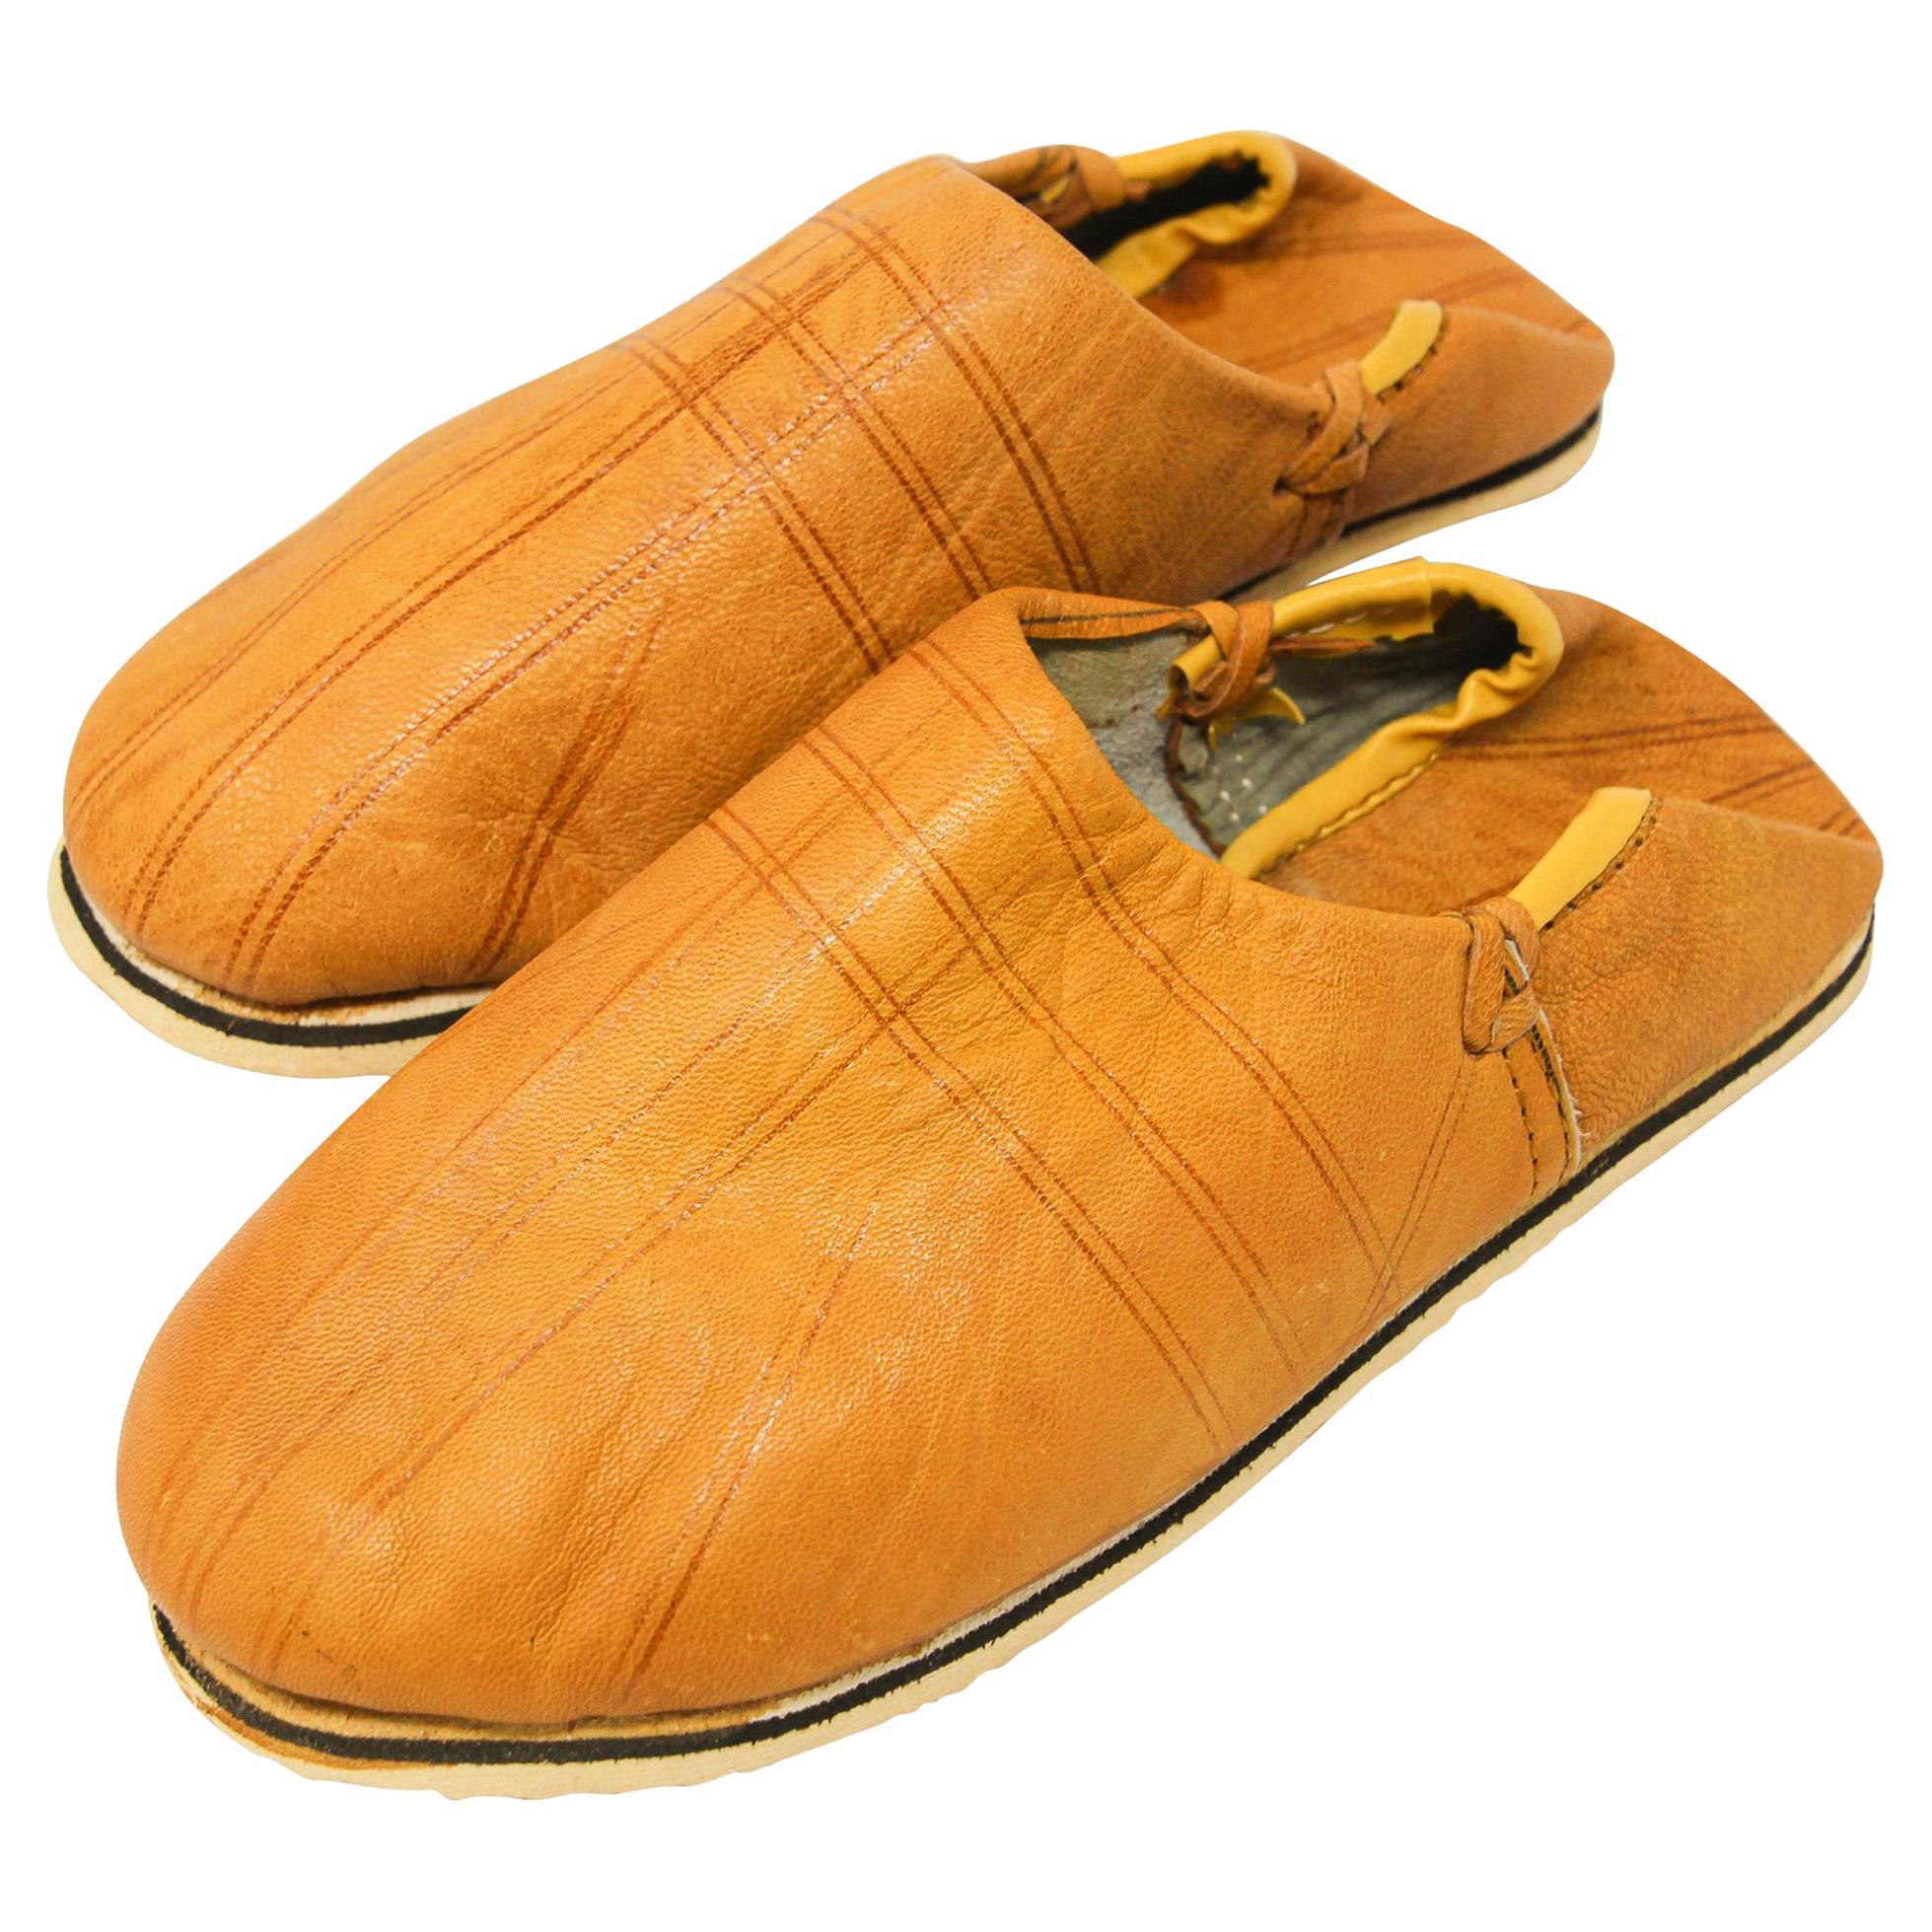 Marokkanische handgefertigte gelbe Leder-Slippers, ethnische Schuhe